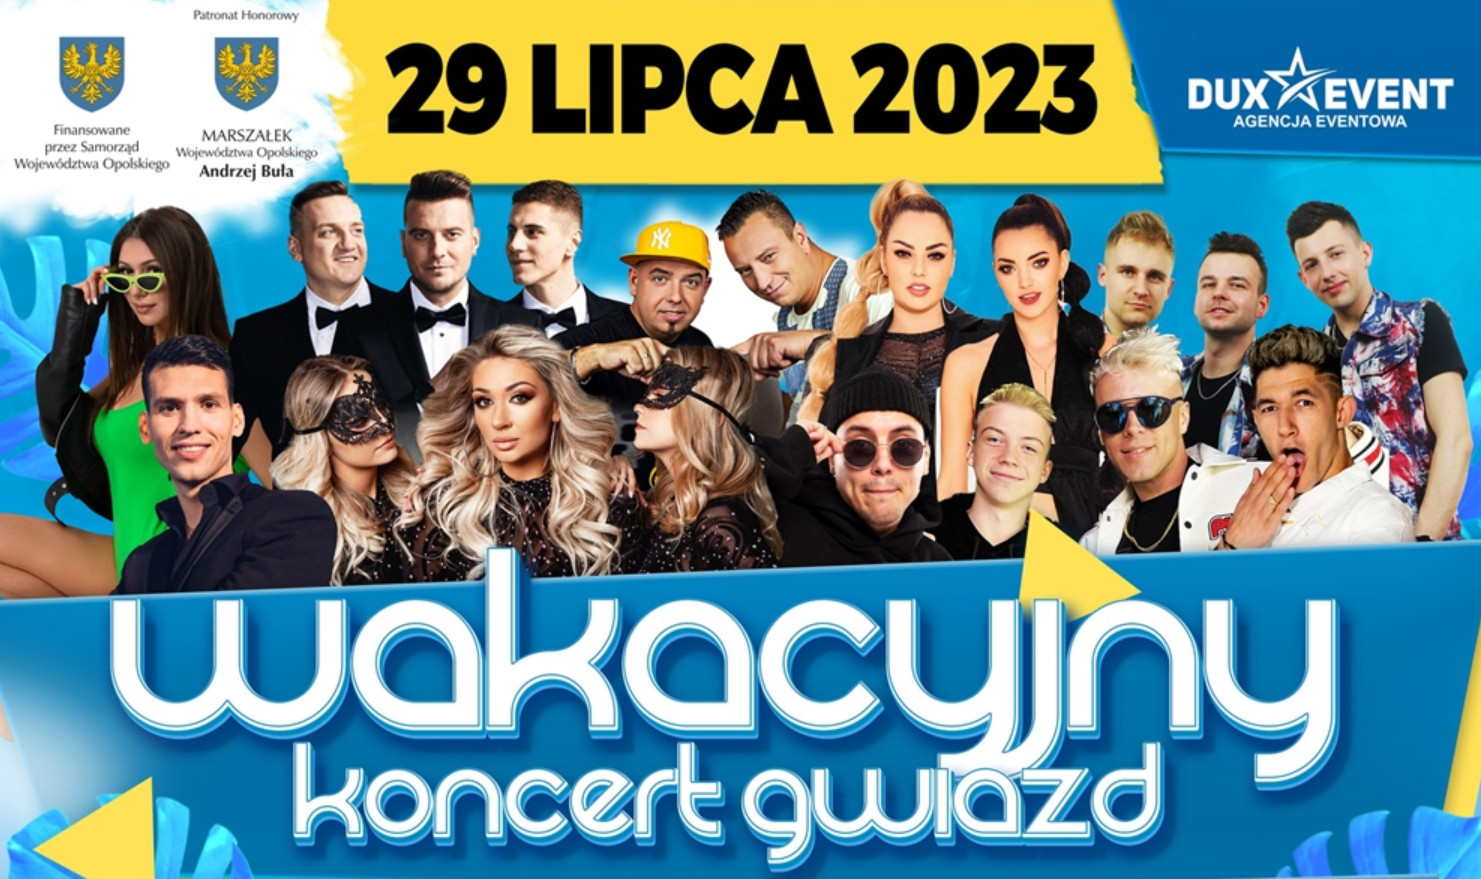 Wakacyjny Koncert Gwiazd Opole 2023 - już za 10 dni! To będzie epicka impreza disco polo!